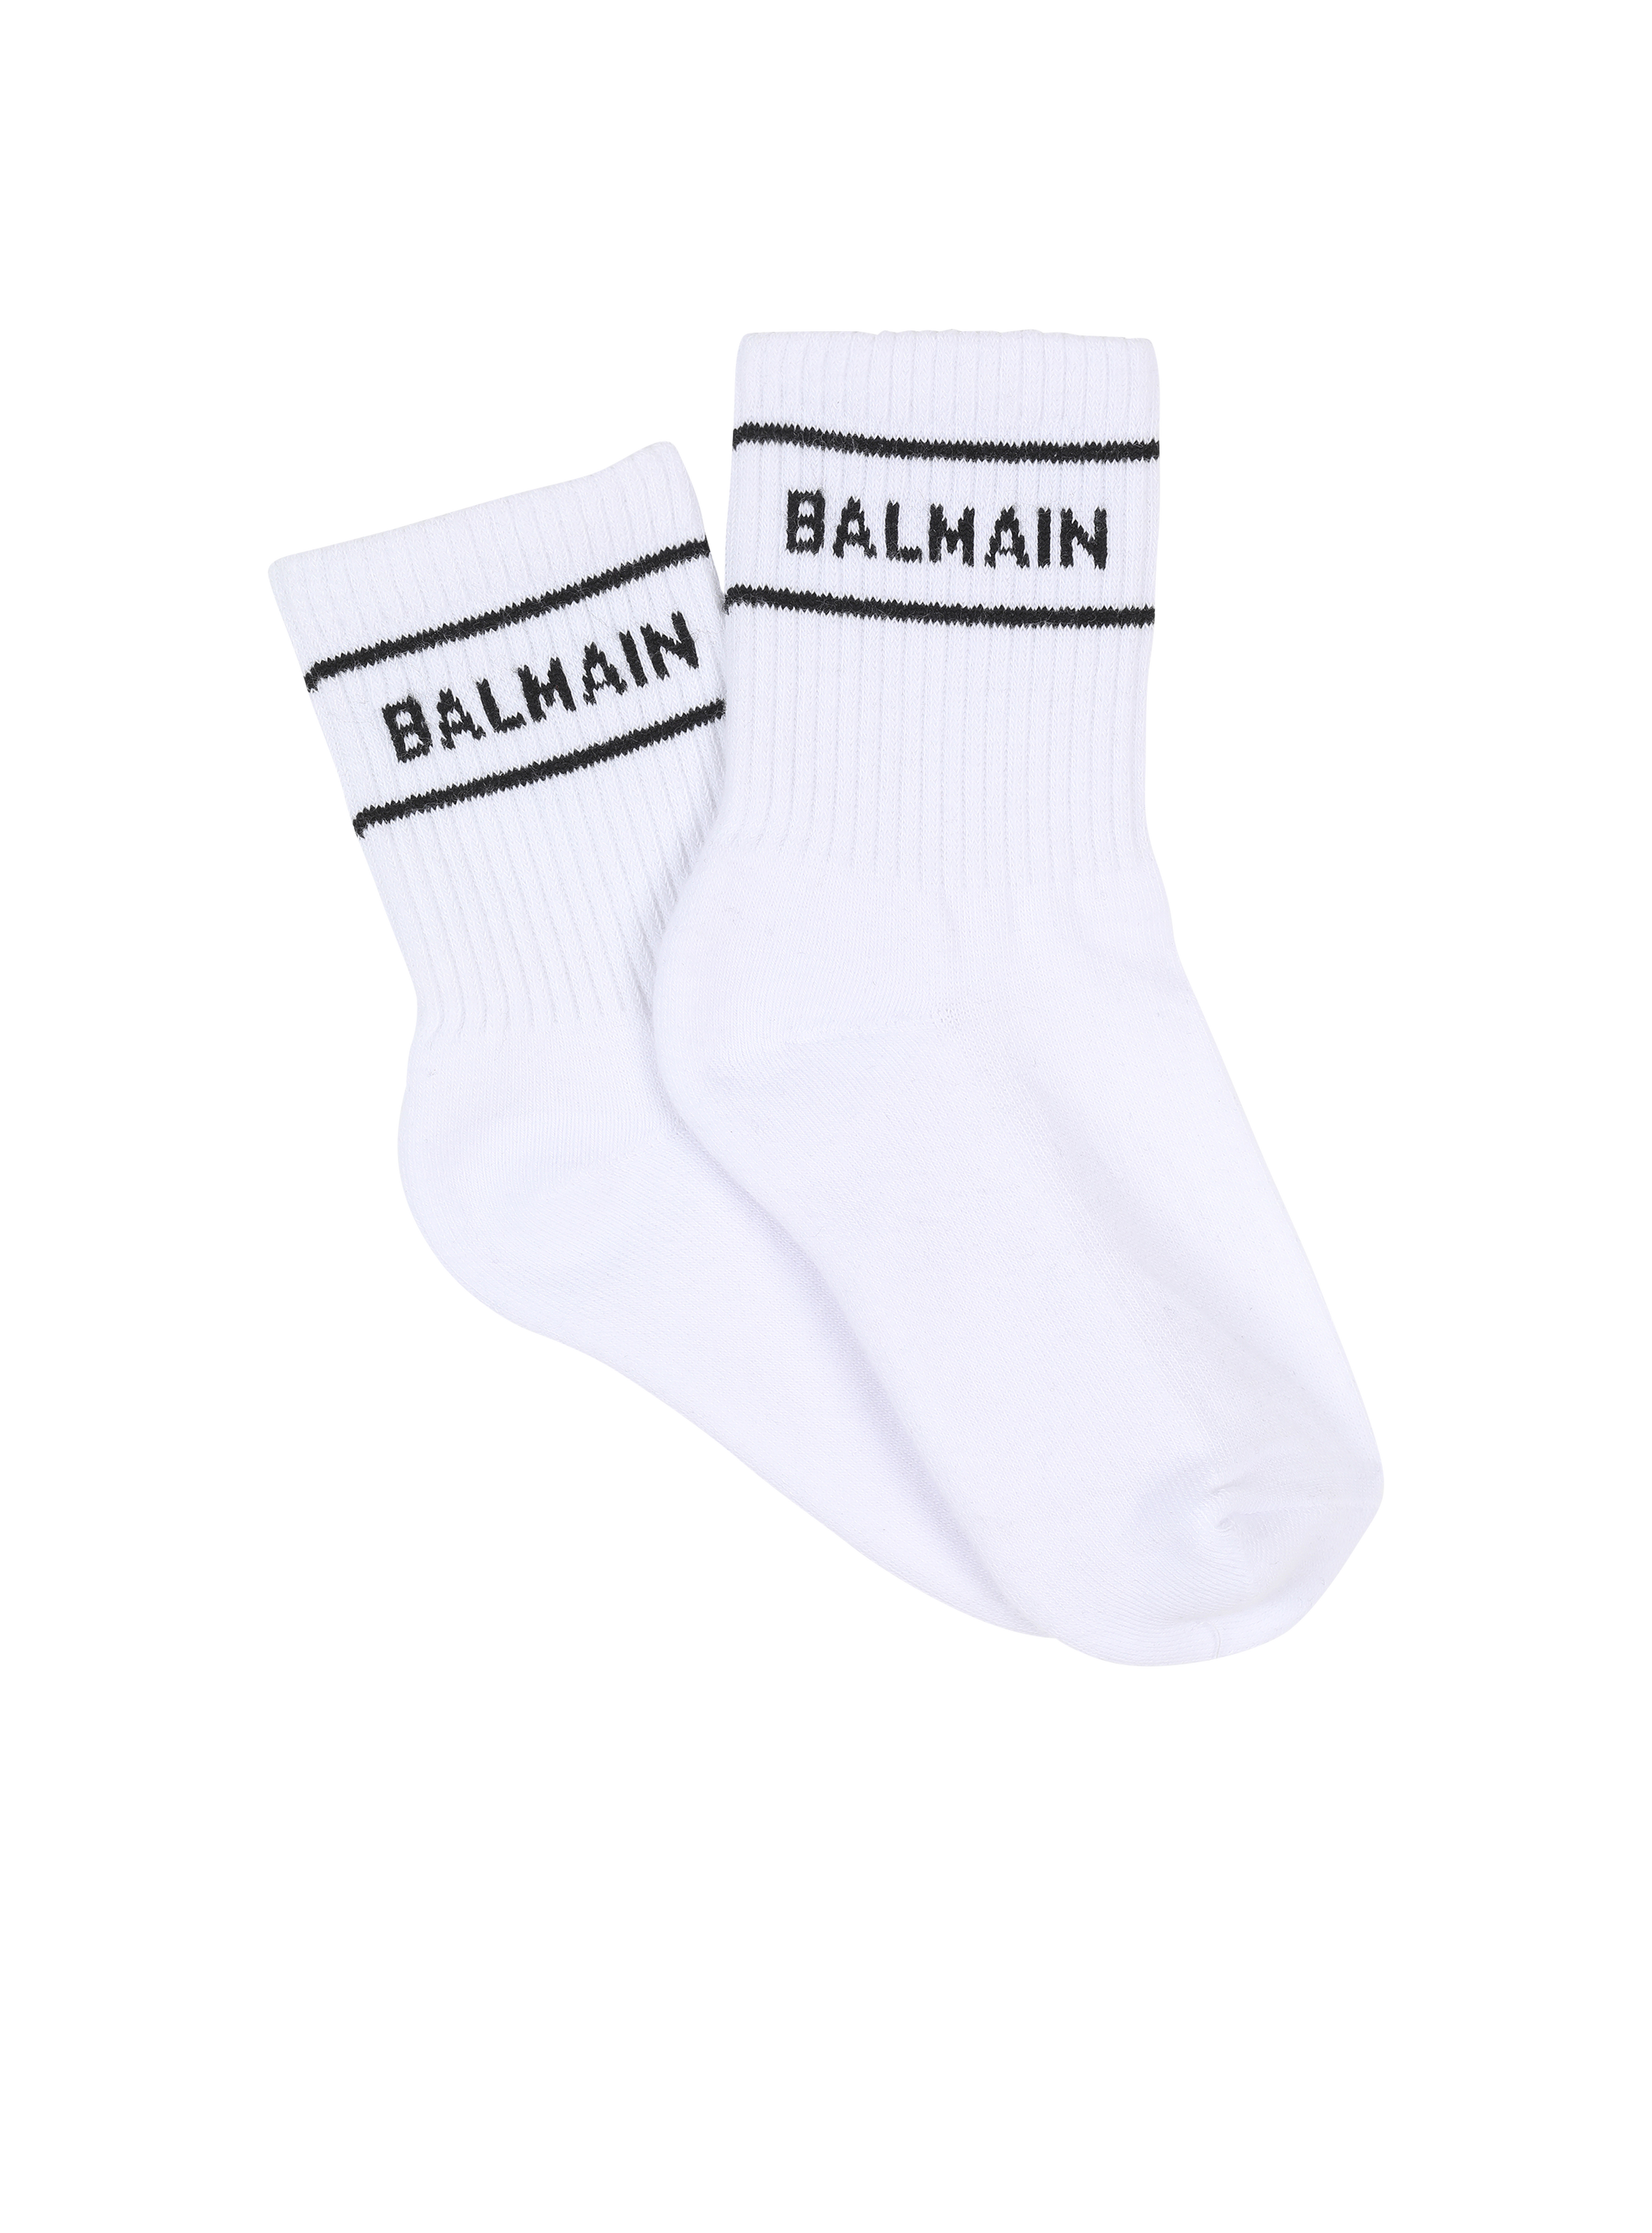 Cotton socks with Balmain logo, white